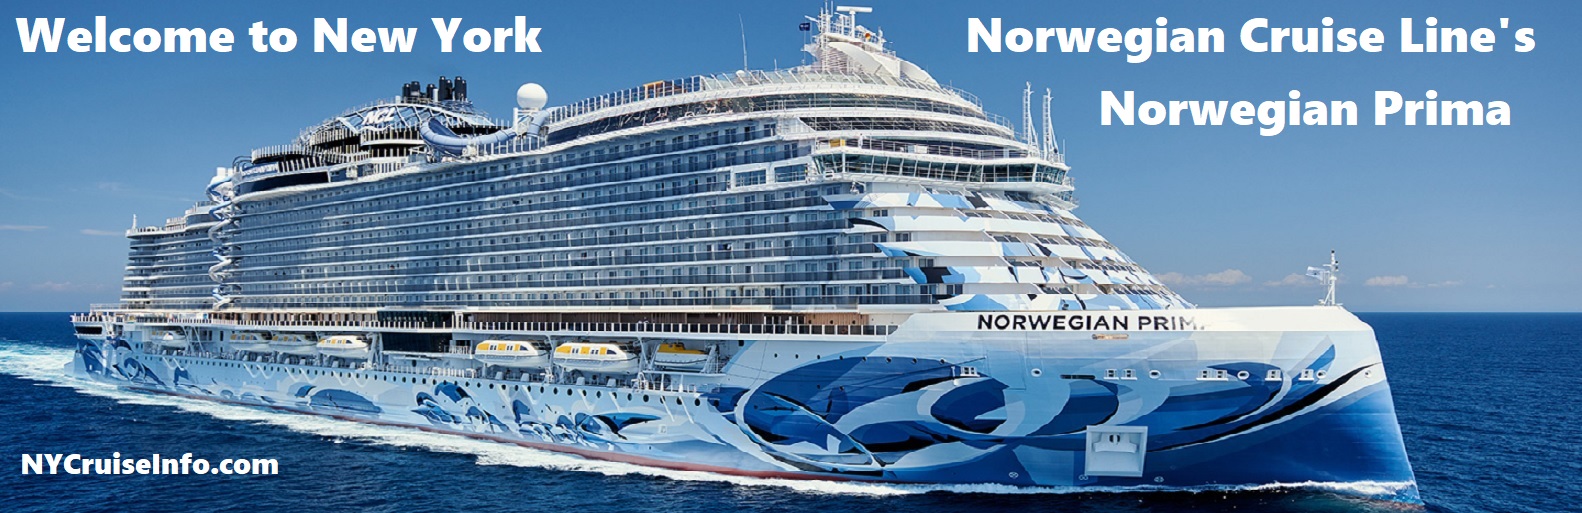 Norwegian Prima seasonally cruising from New York